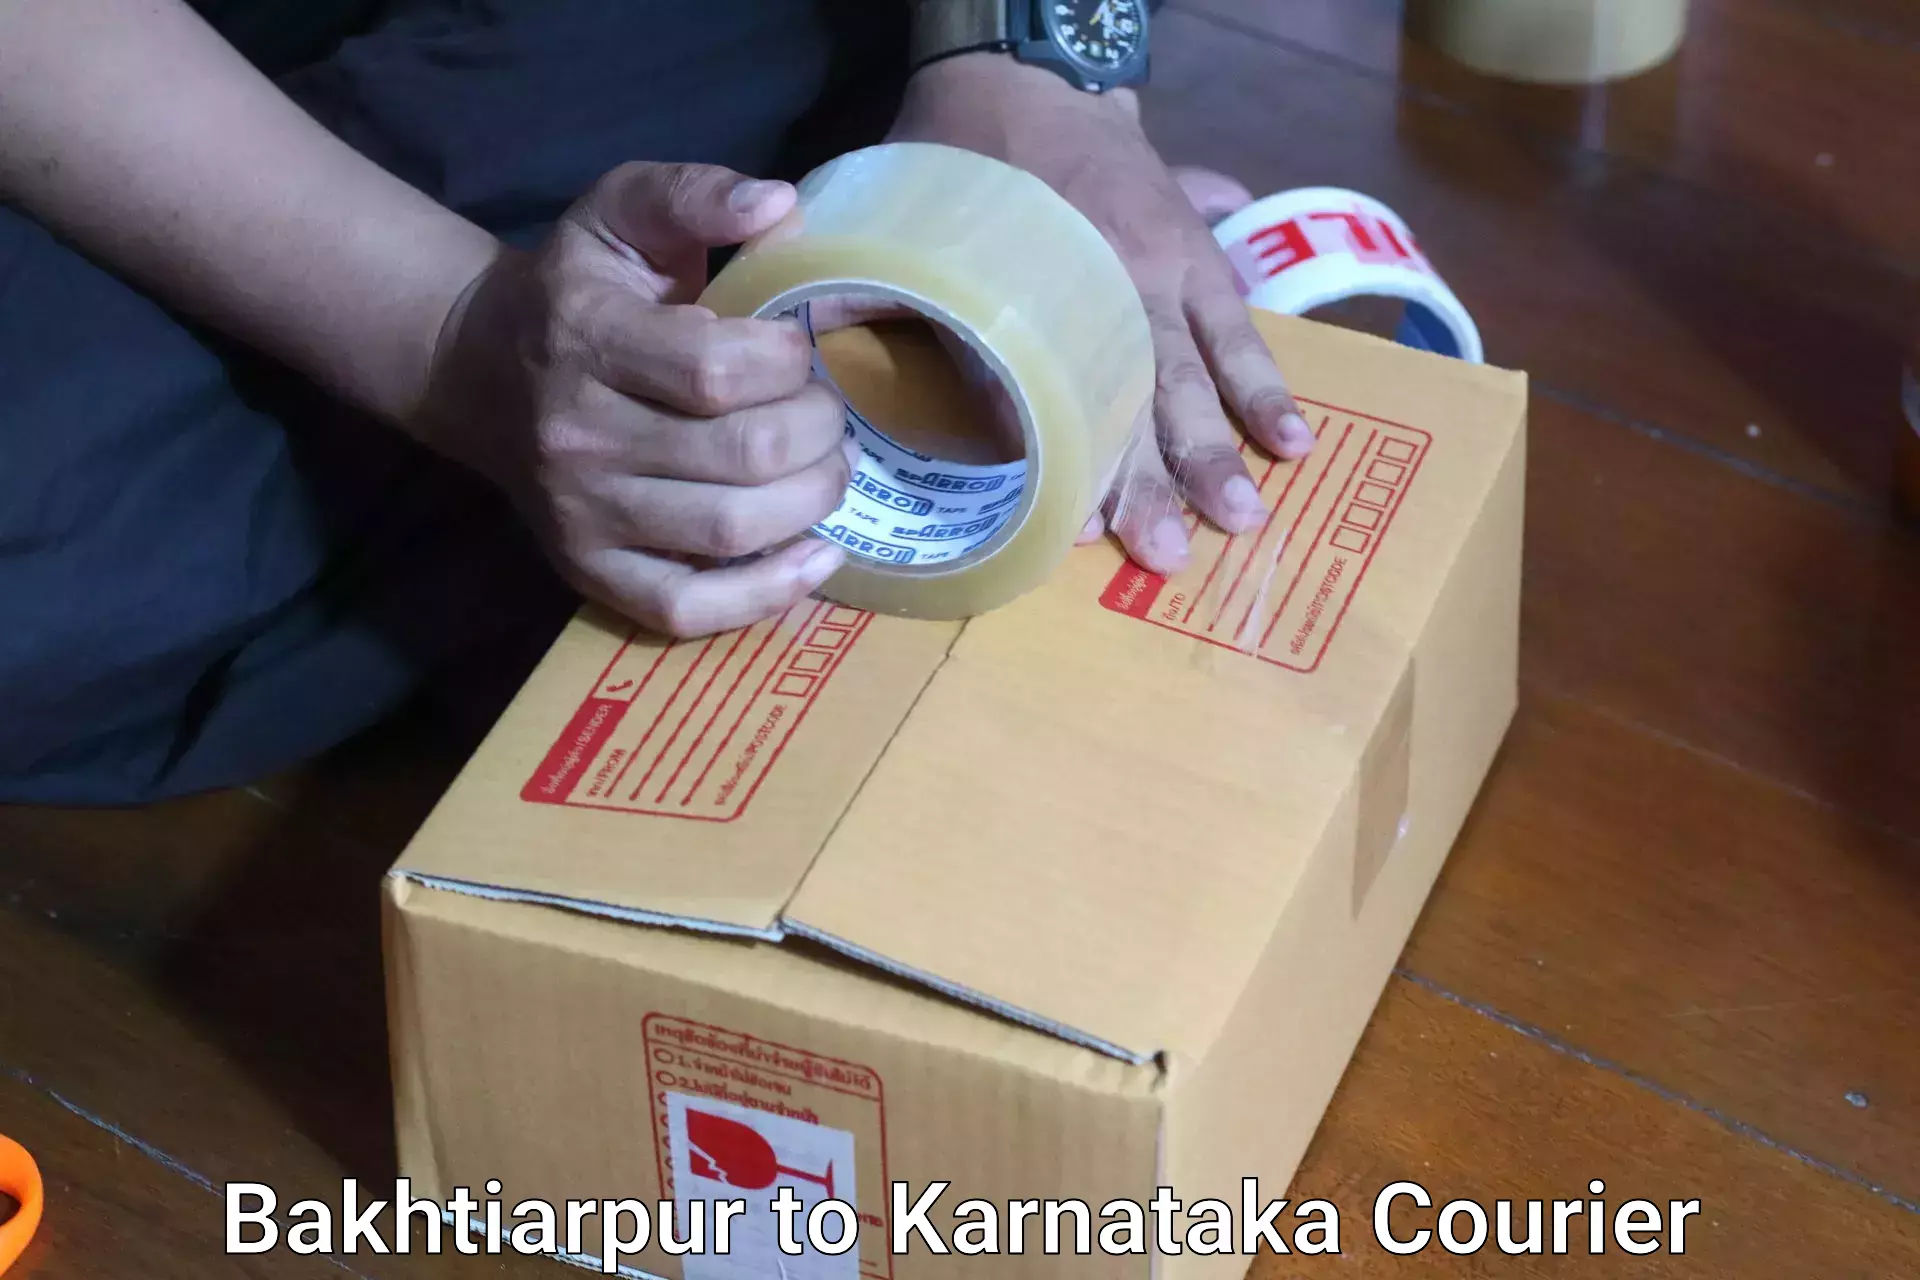 Baggage delivery solutions Bakhtiarpur to Karnataka